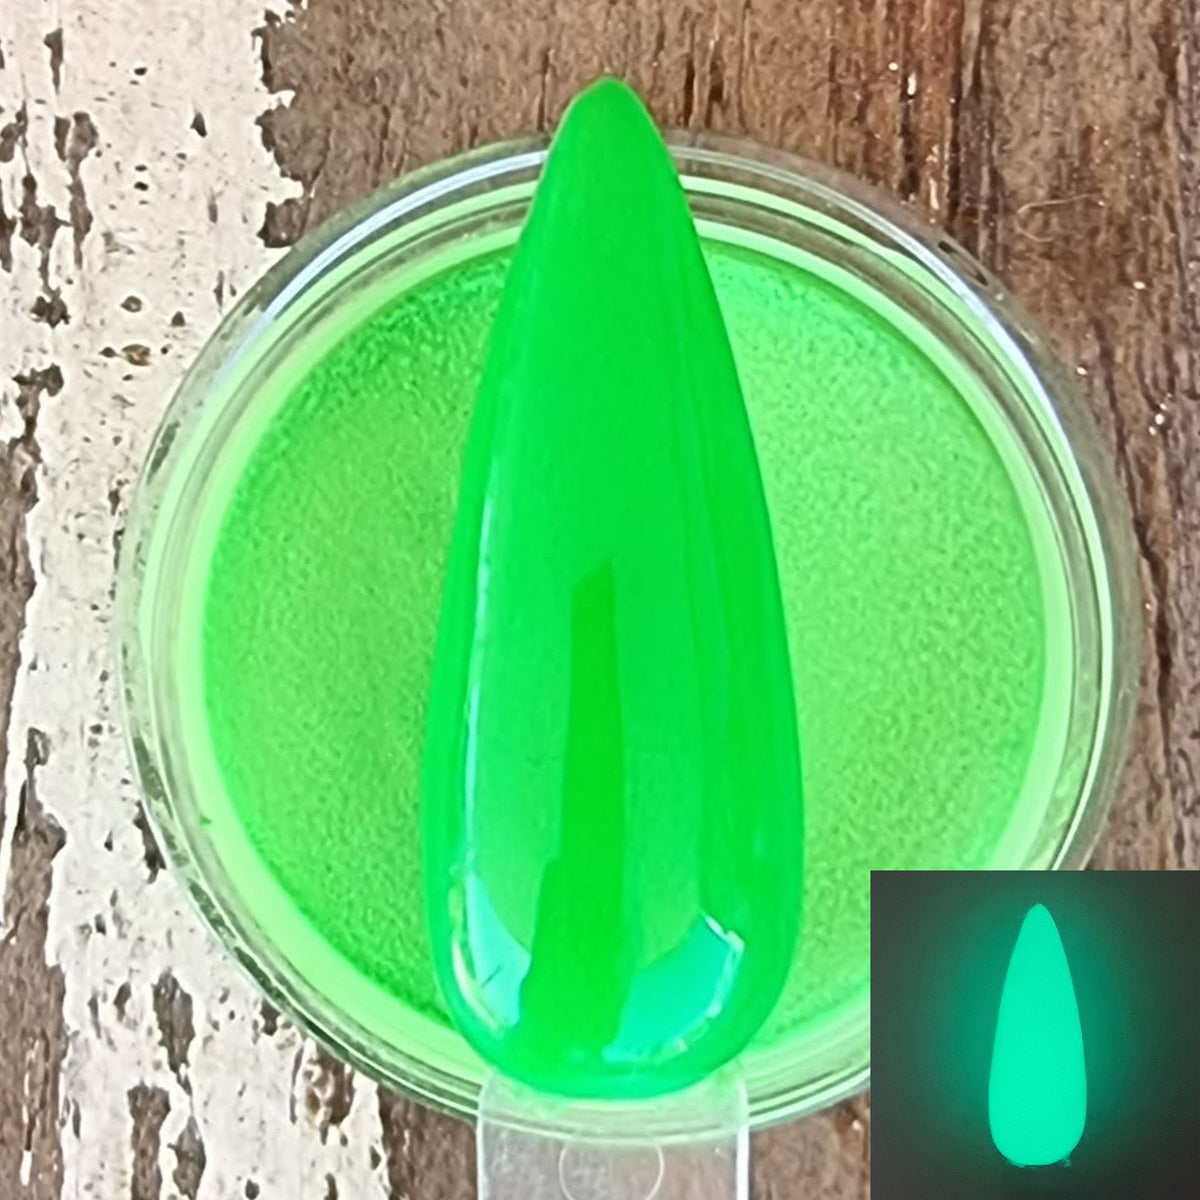 Pot and Swatch of Green Lantern Dip Powder